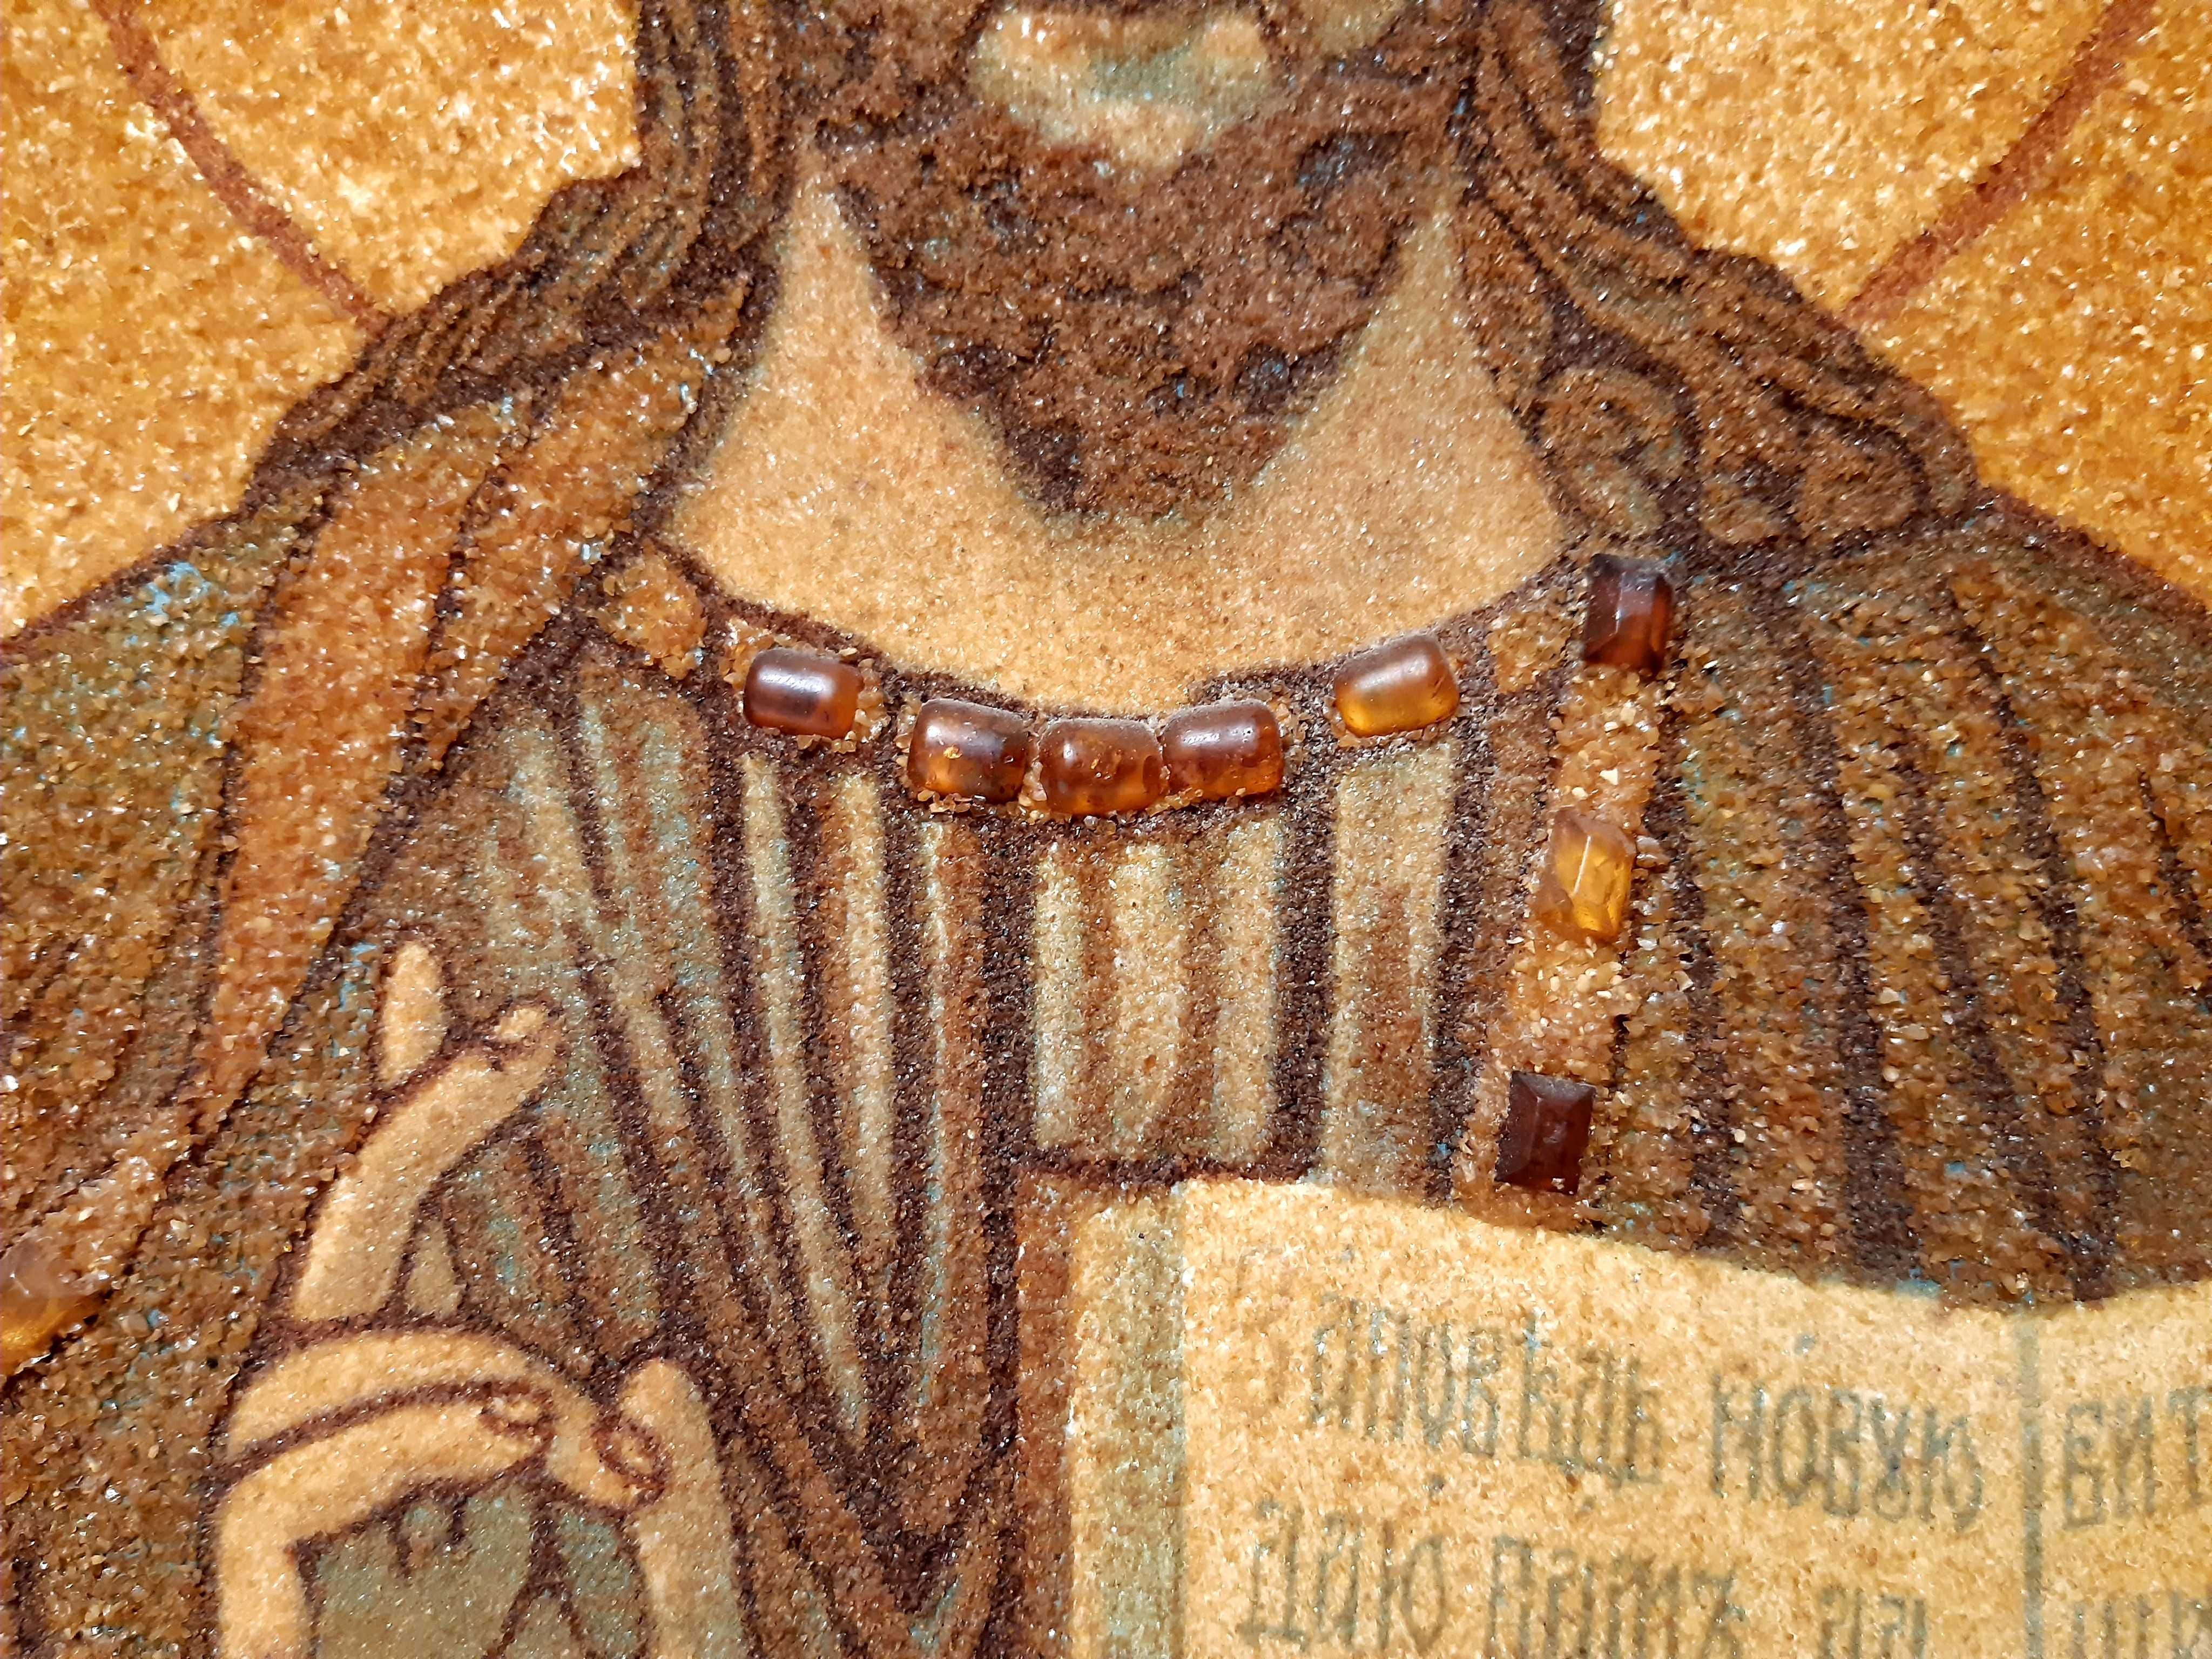 Икона из янтаря Иисус Христос 36*48 см